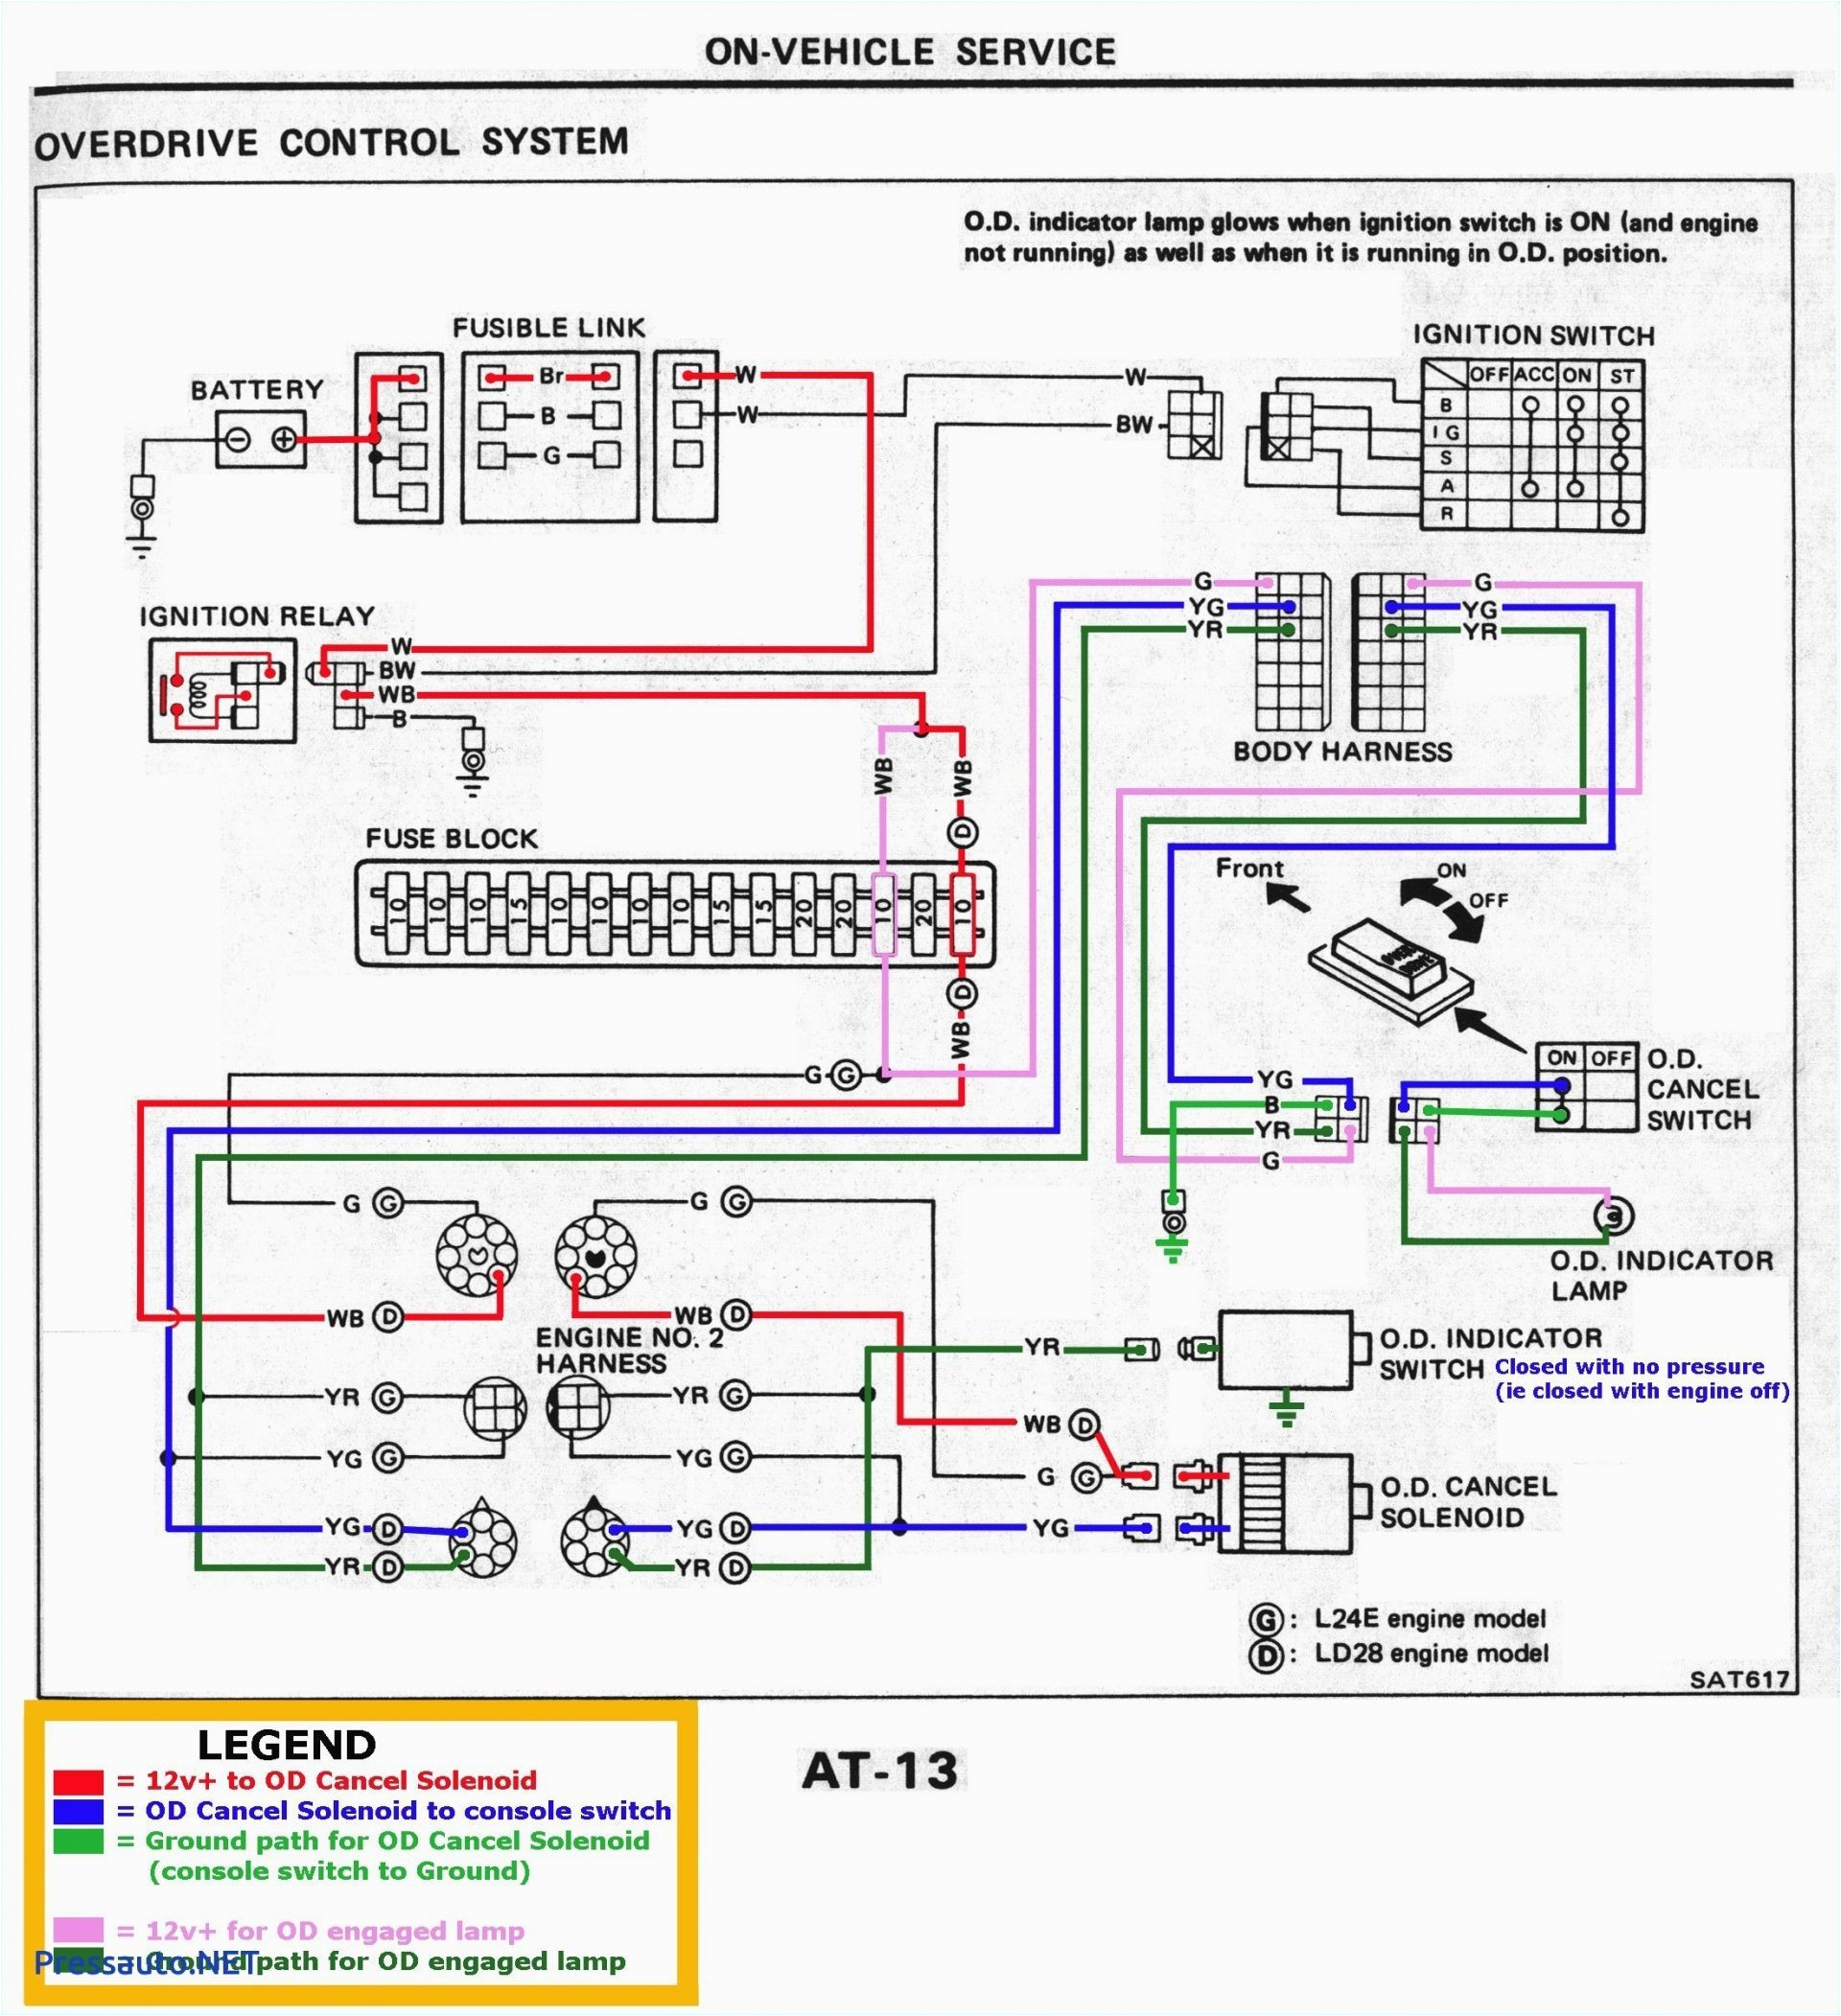 bs2 wiring diagram wiring diagram le9 wiring diagram wiring diagram namele9 wiring diagram my wiring diagram